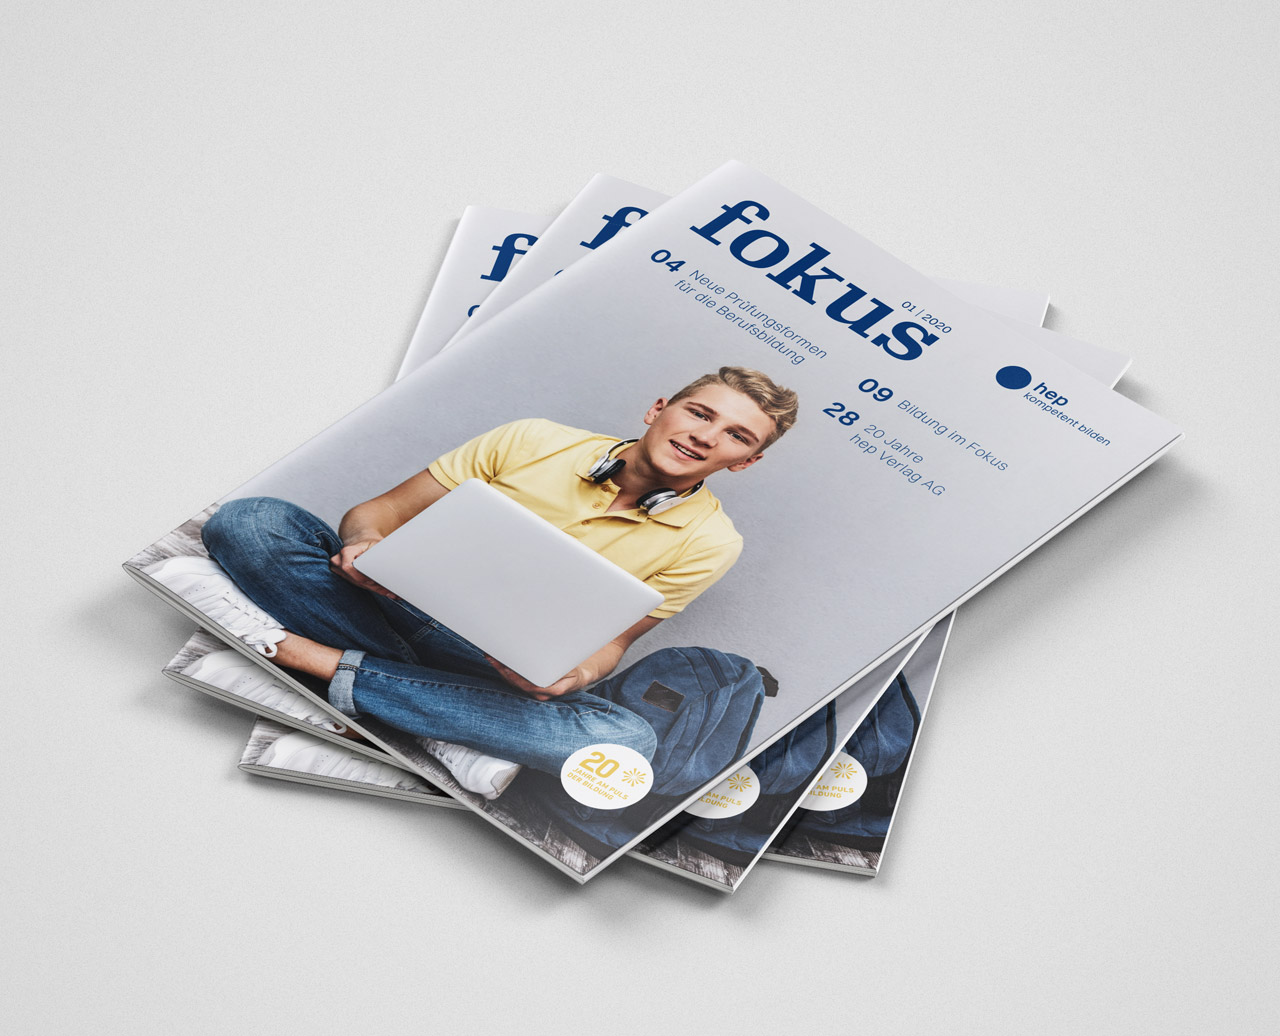 Editorialdesign für Kundenmagazin «fokus»